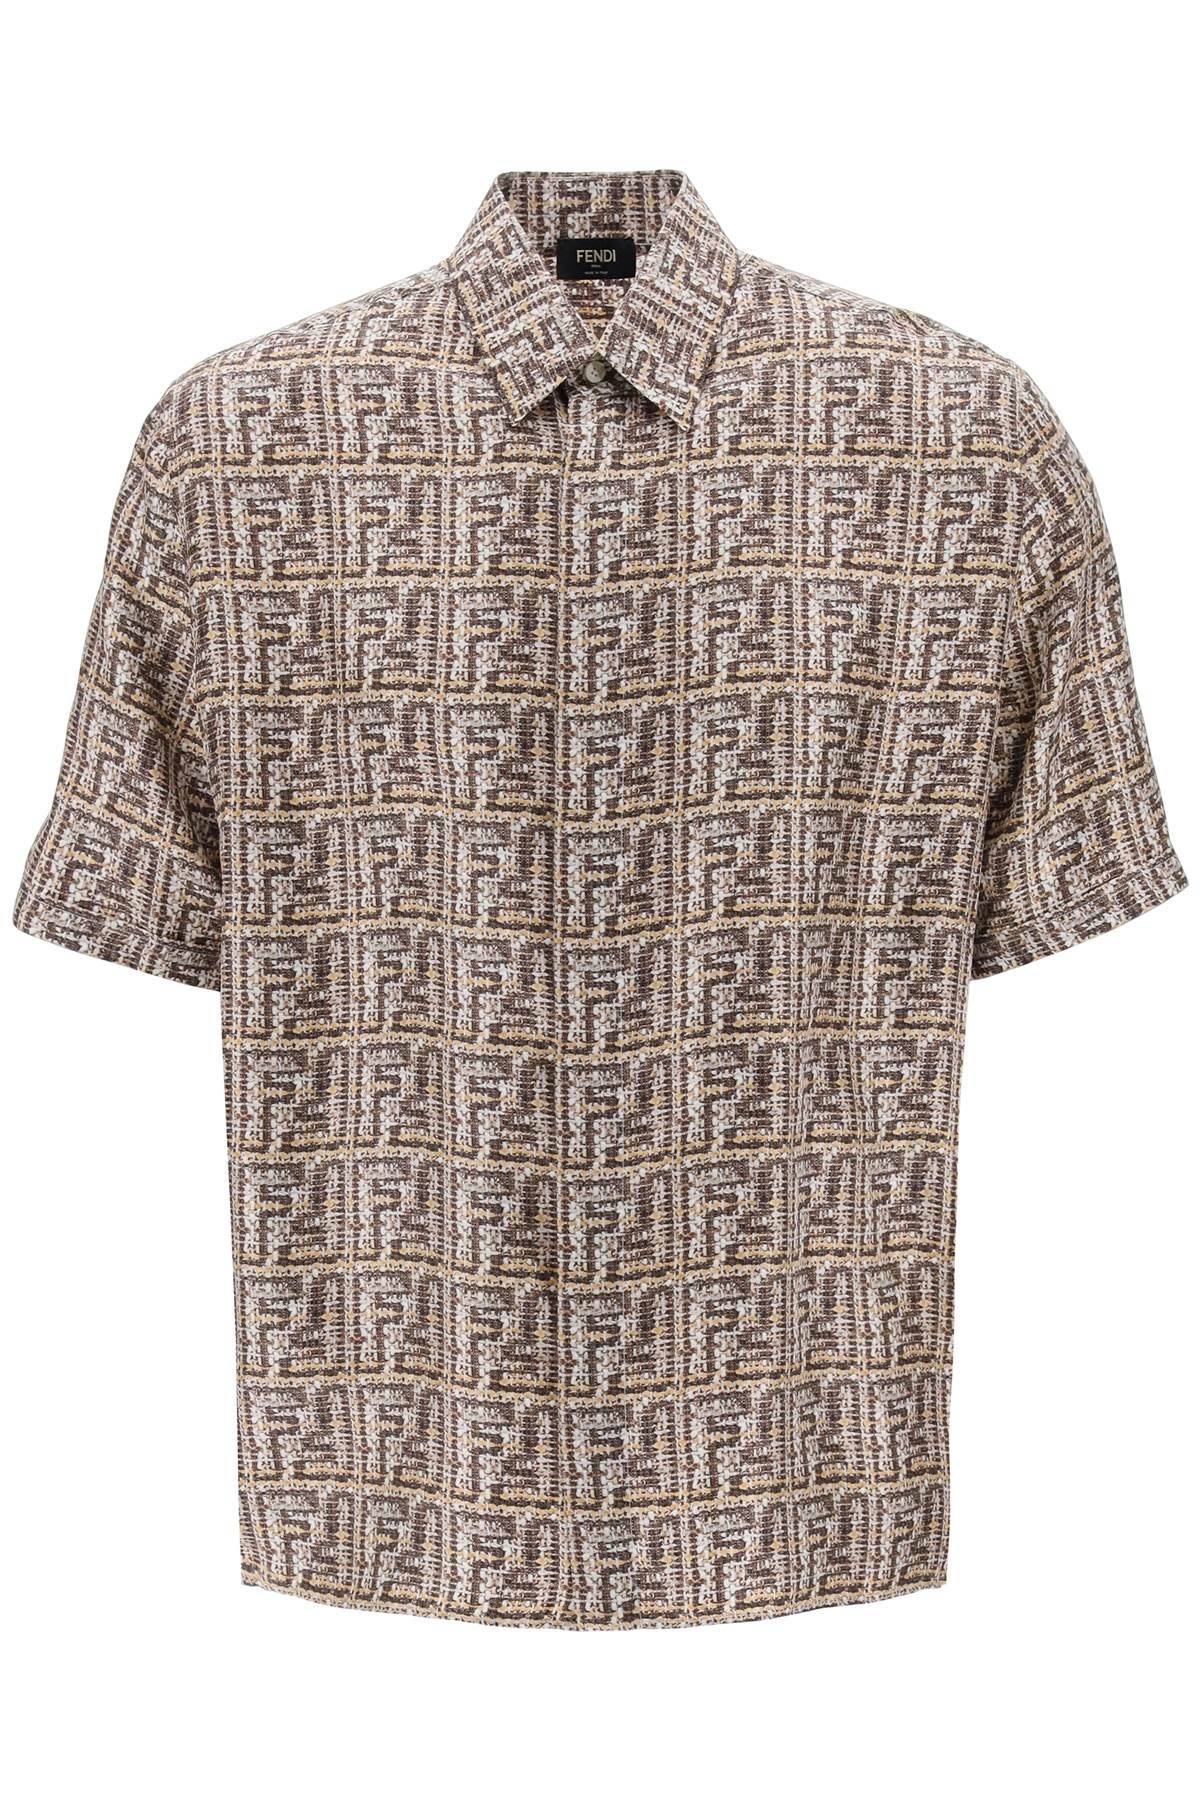 FENDI FENDI short-sleeved silk shirt with ff